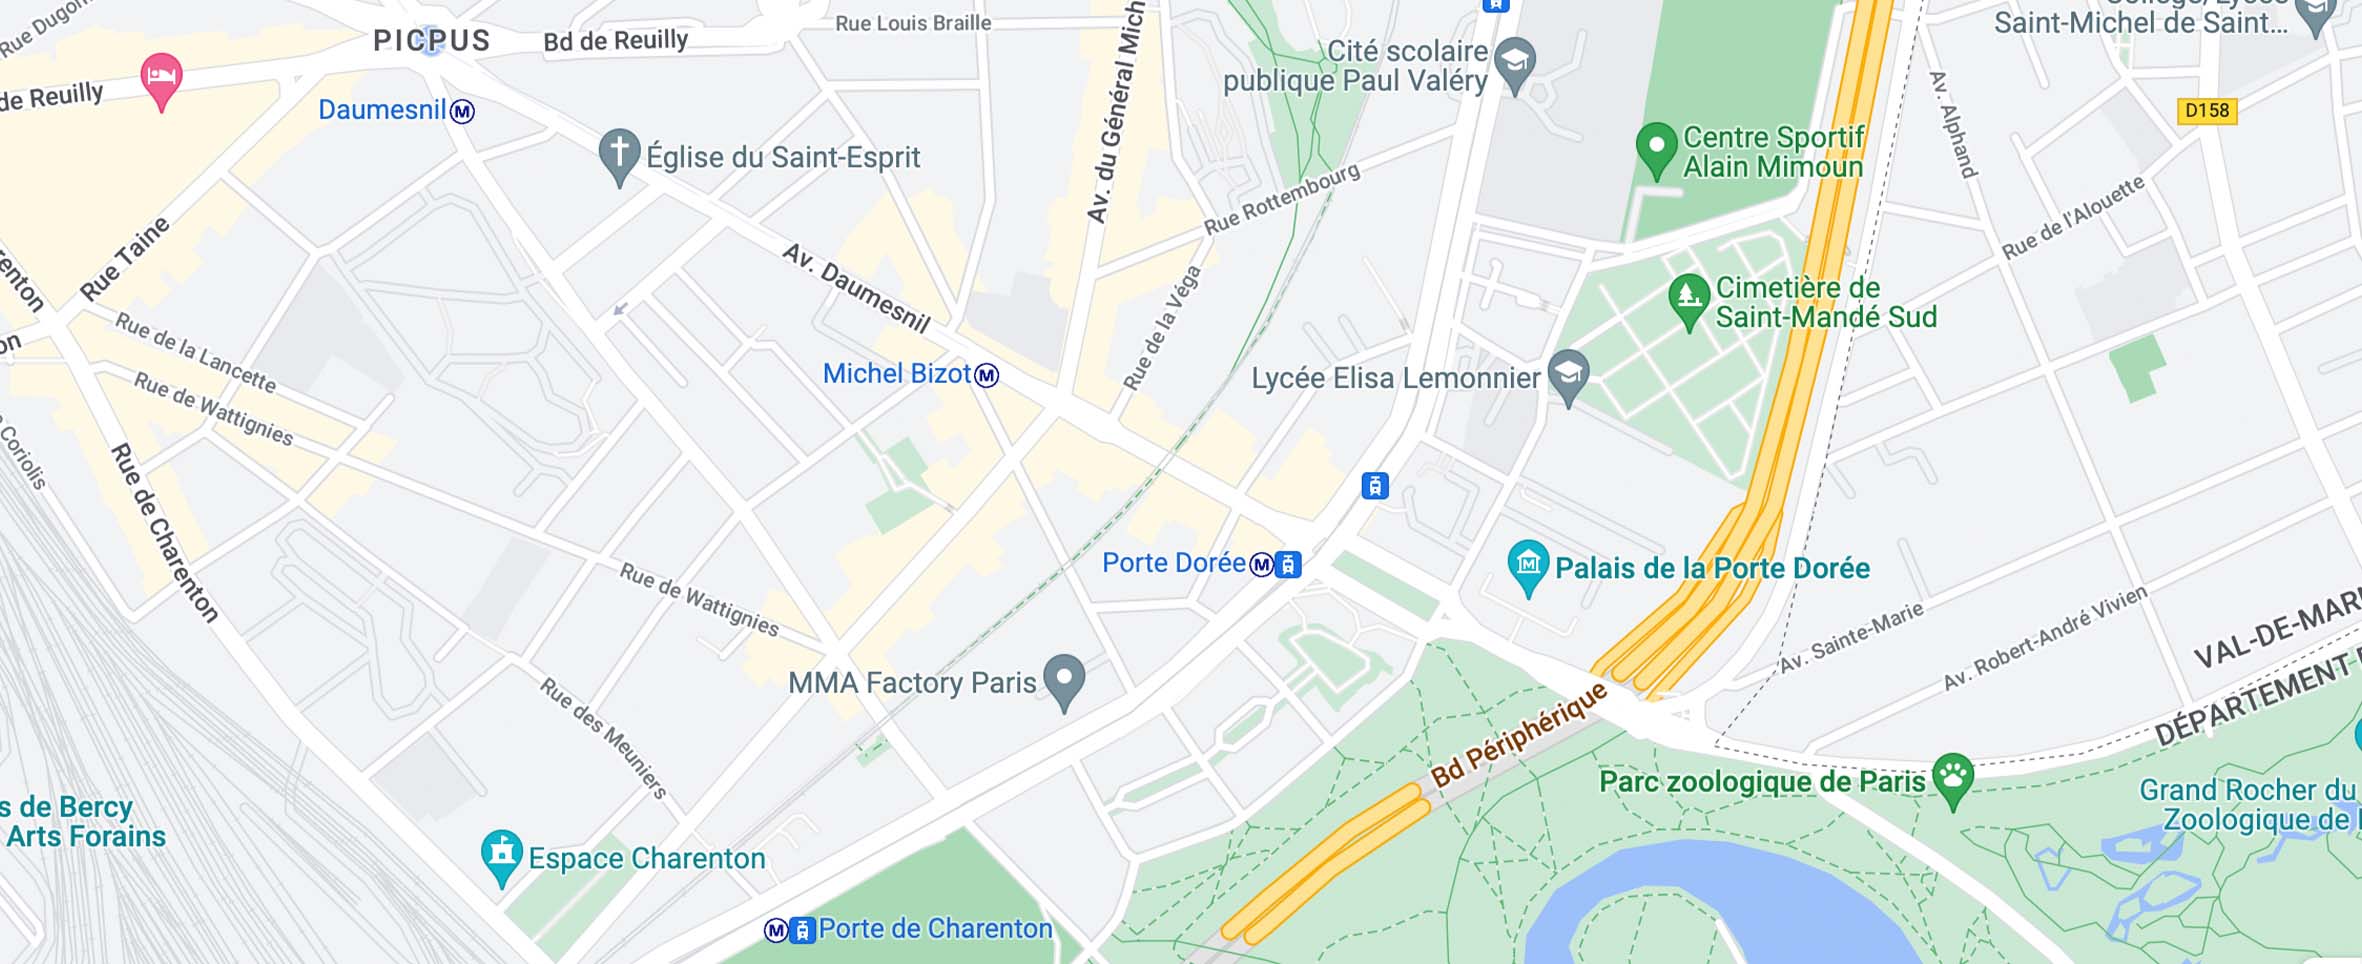 Mapa para llegar al zoológico de París